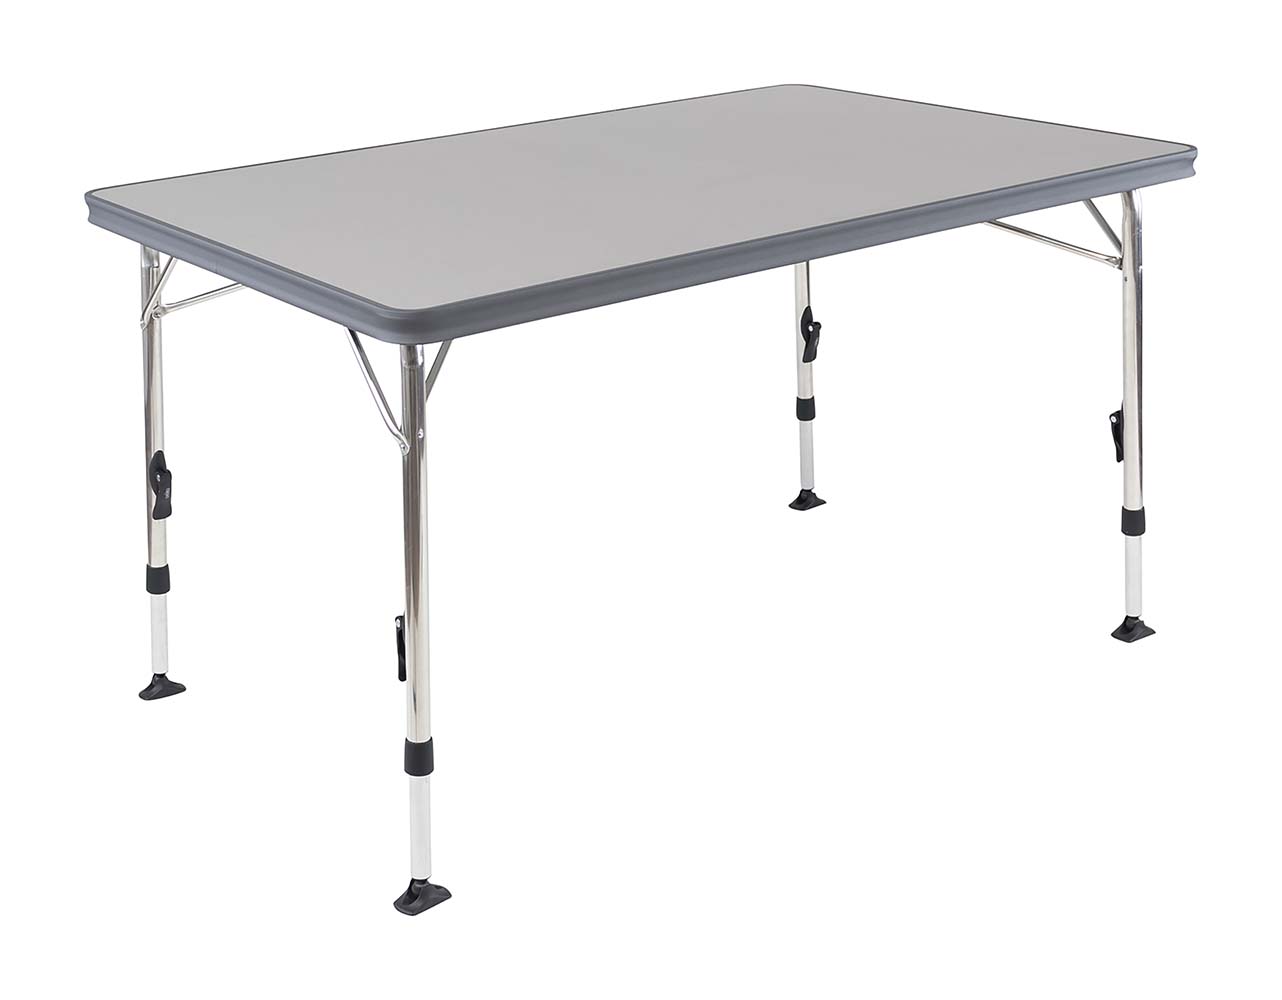 1151385 Ein luxuriöser und stilvoller Tisch. Dieser leichte Campingtisch verfügt über eine hitzebeständige und wasserfeste Tischplatte. Der Tisch hat stufenlos verstellbare Beine (59-74 cm), die zusammengeklappt werden können, so dass dieser Tisch leicht und kompakt zu transportieren ist. Dank der stabilisierenden Füße steht der Tisch auf jedem Untergrund sicher.